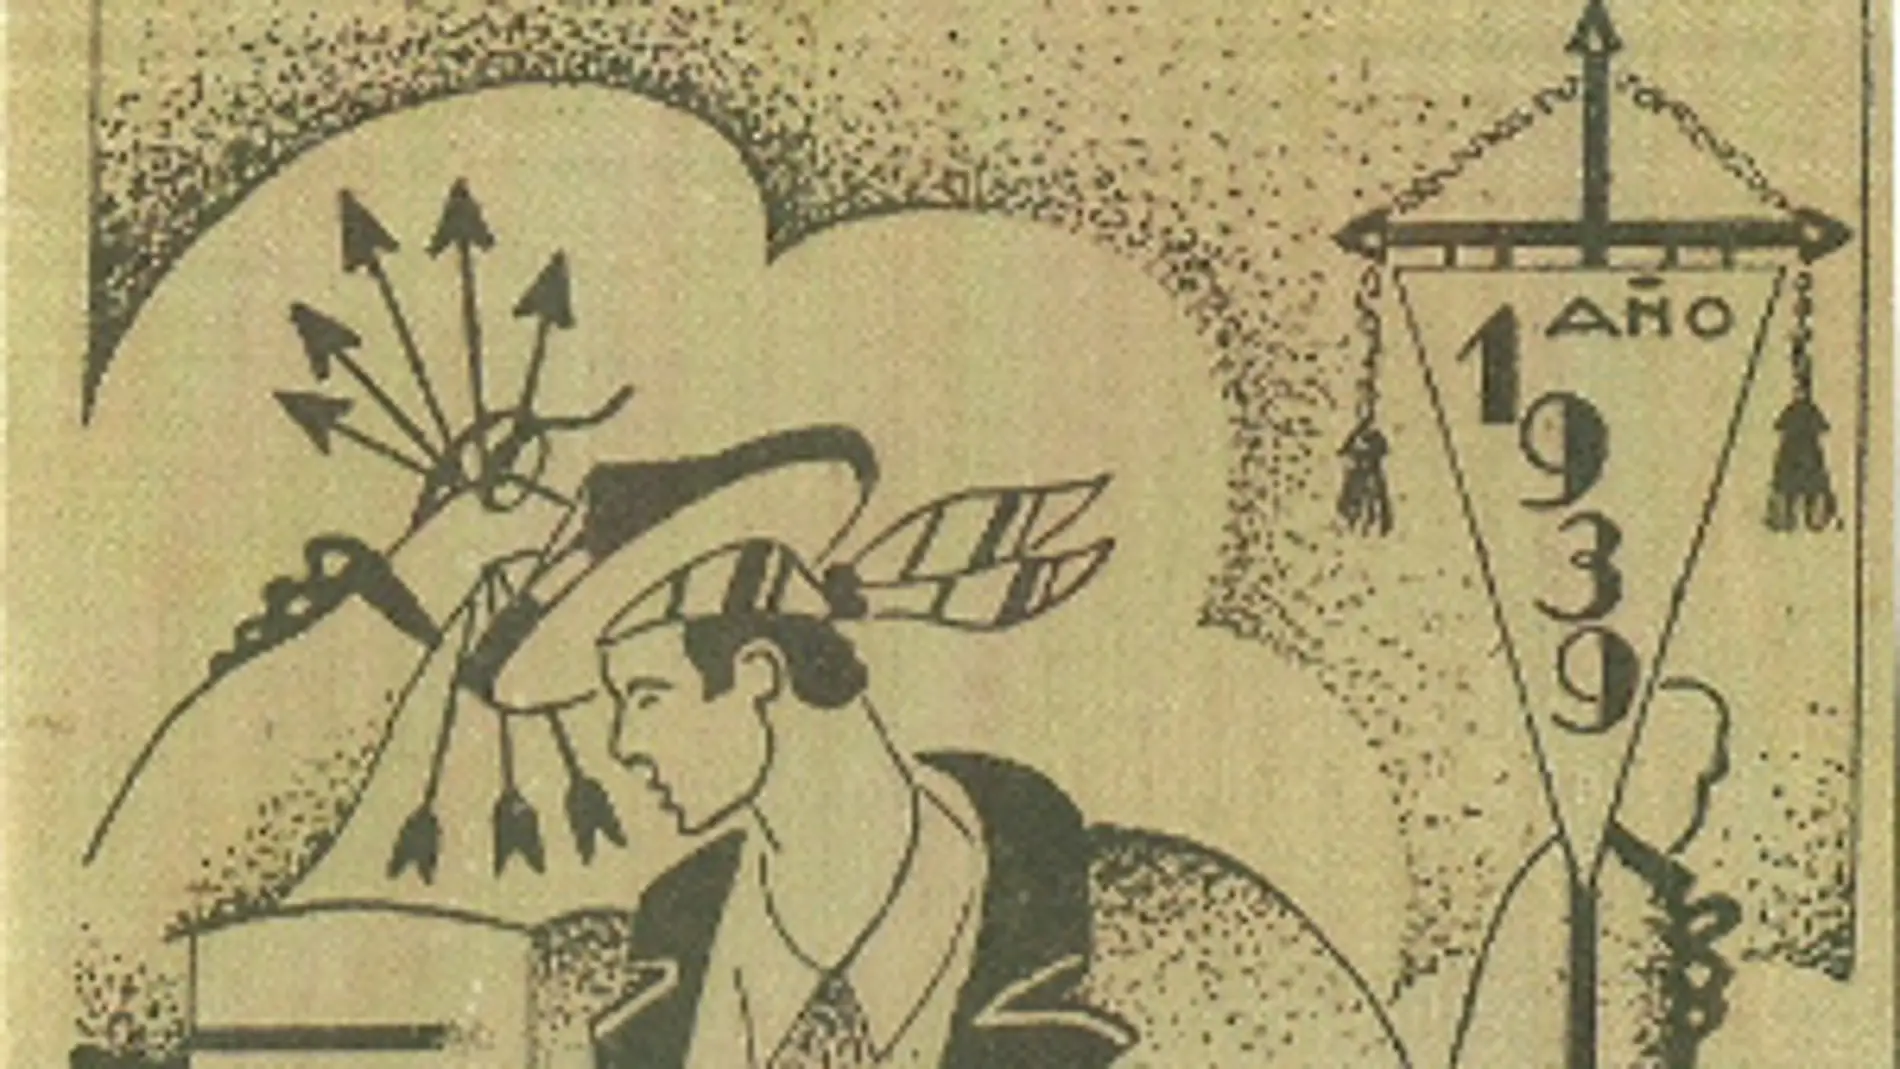 Cartel anunciador de les Fogueres en 1939